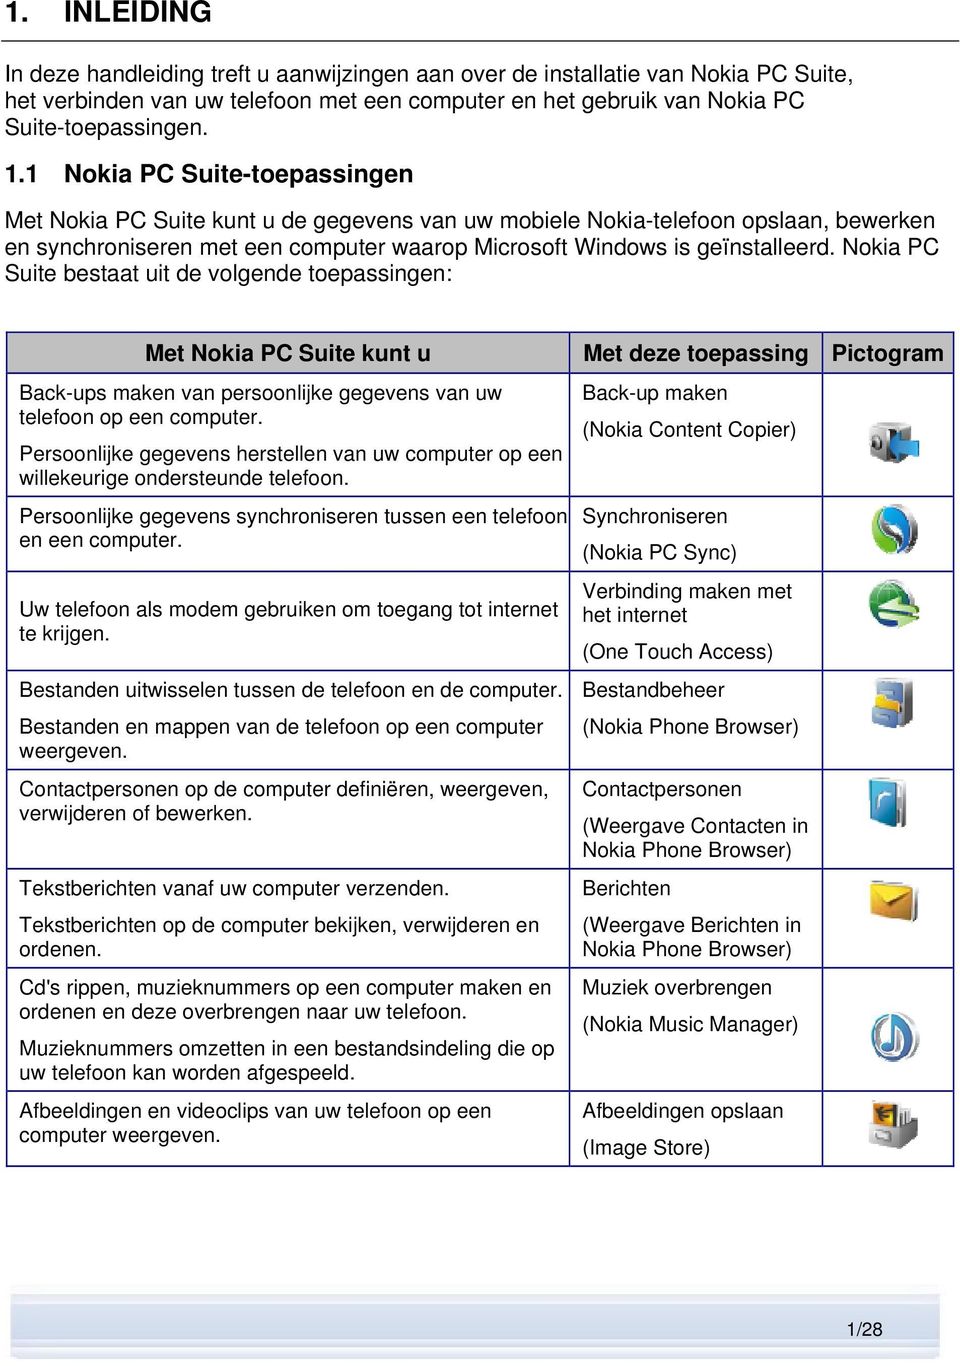 Nokia PC Suite bestaat uit de volgende toepassingen: Met Nokia PC Suite kunt u Back-ups maken van persoonlijke gegevens van uw telefoon op een computer.